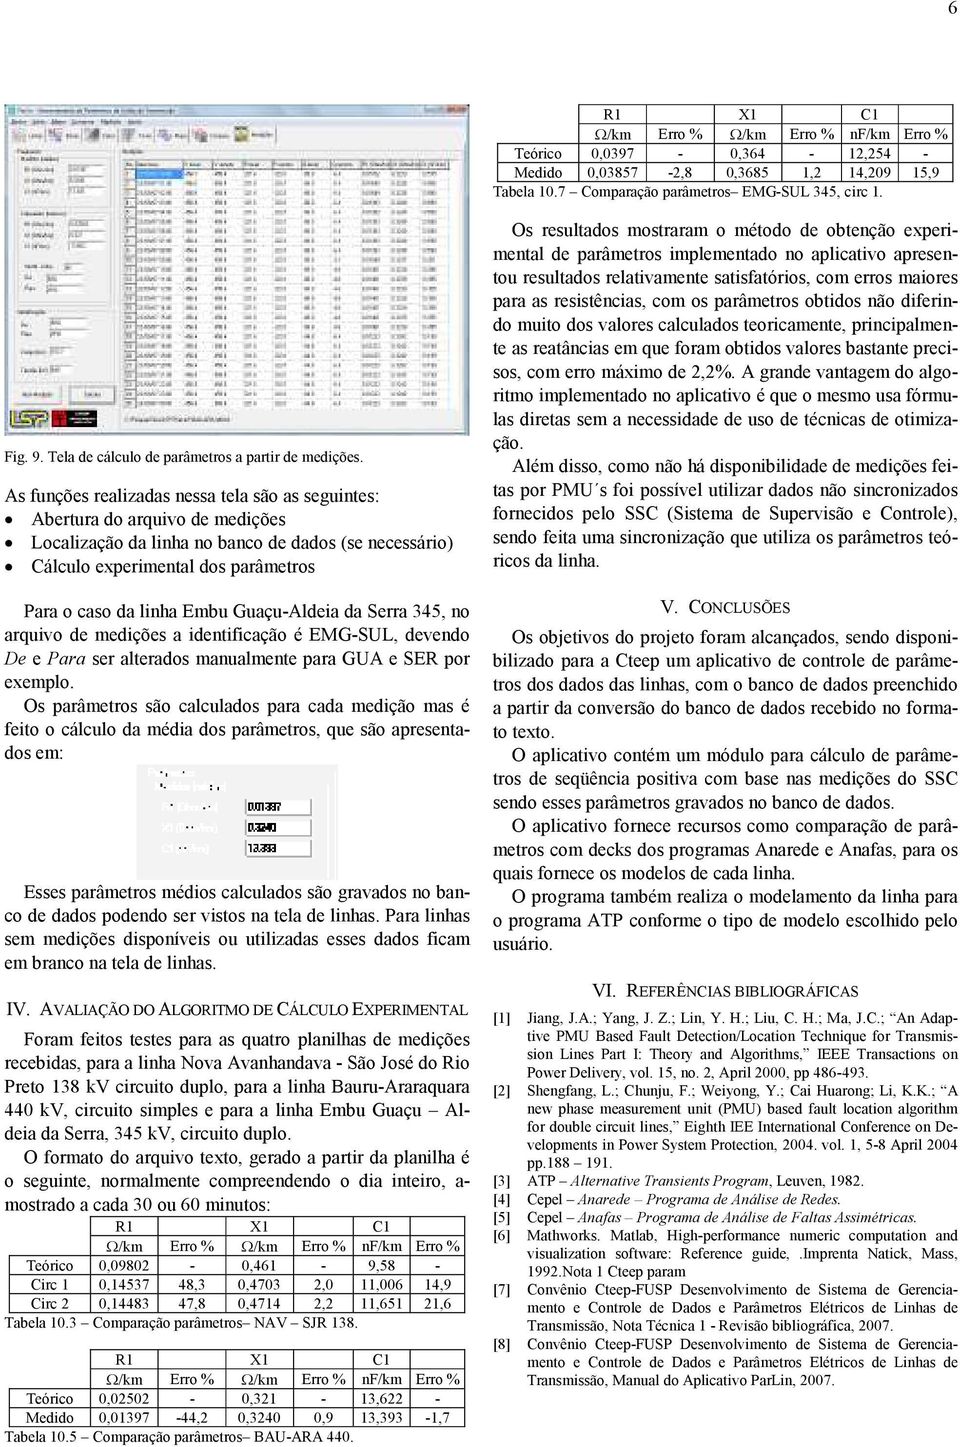 Aertura do arquivo de medições ocalização da linha no anco de dados (se necessário) Cálculo experimental dos parâmetros Para o caso da linha Emu Guaçu-Aldeia da Serra 345, no arquivo de medições a